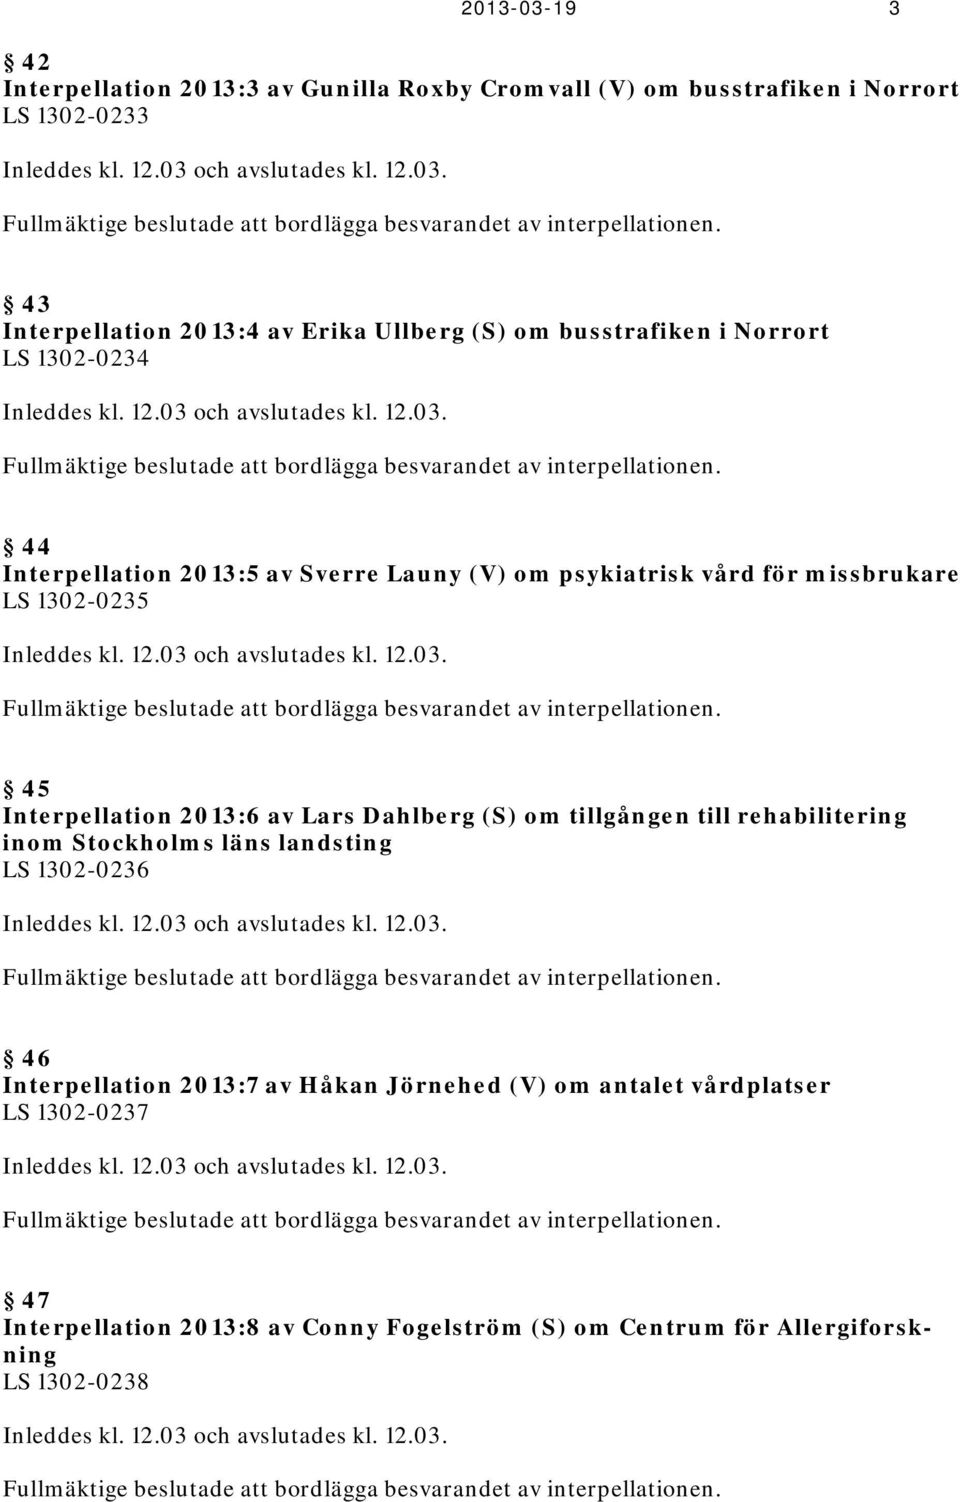 44 Interpellation 2013:5 av Sverre Launy (V) om psykiatrisk vård för missbrukare LS 1302-0235 Inleddes kl. 12.03 och avslutades kl. 12.03. Fullmäktige beslutade att bordlägga besvarandet av interpellationen.